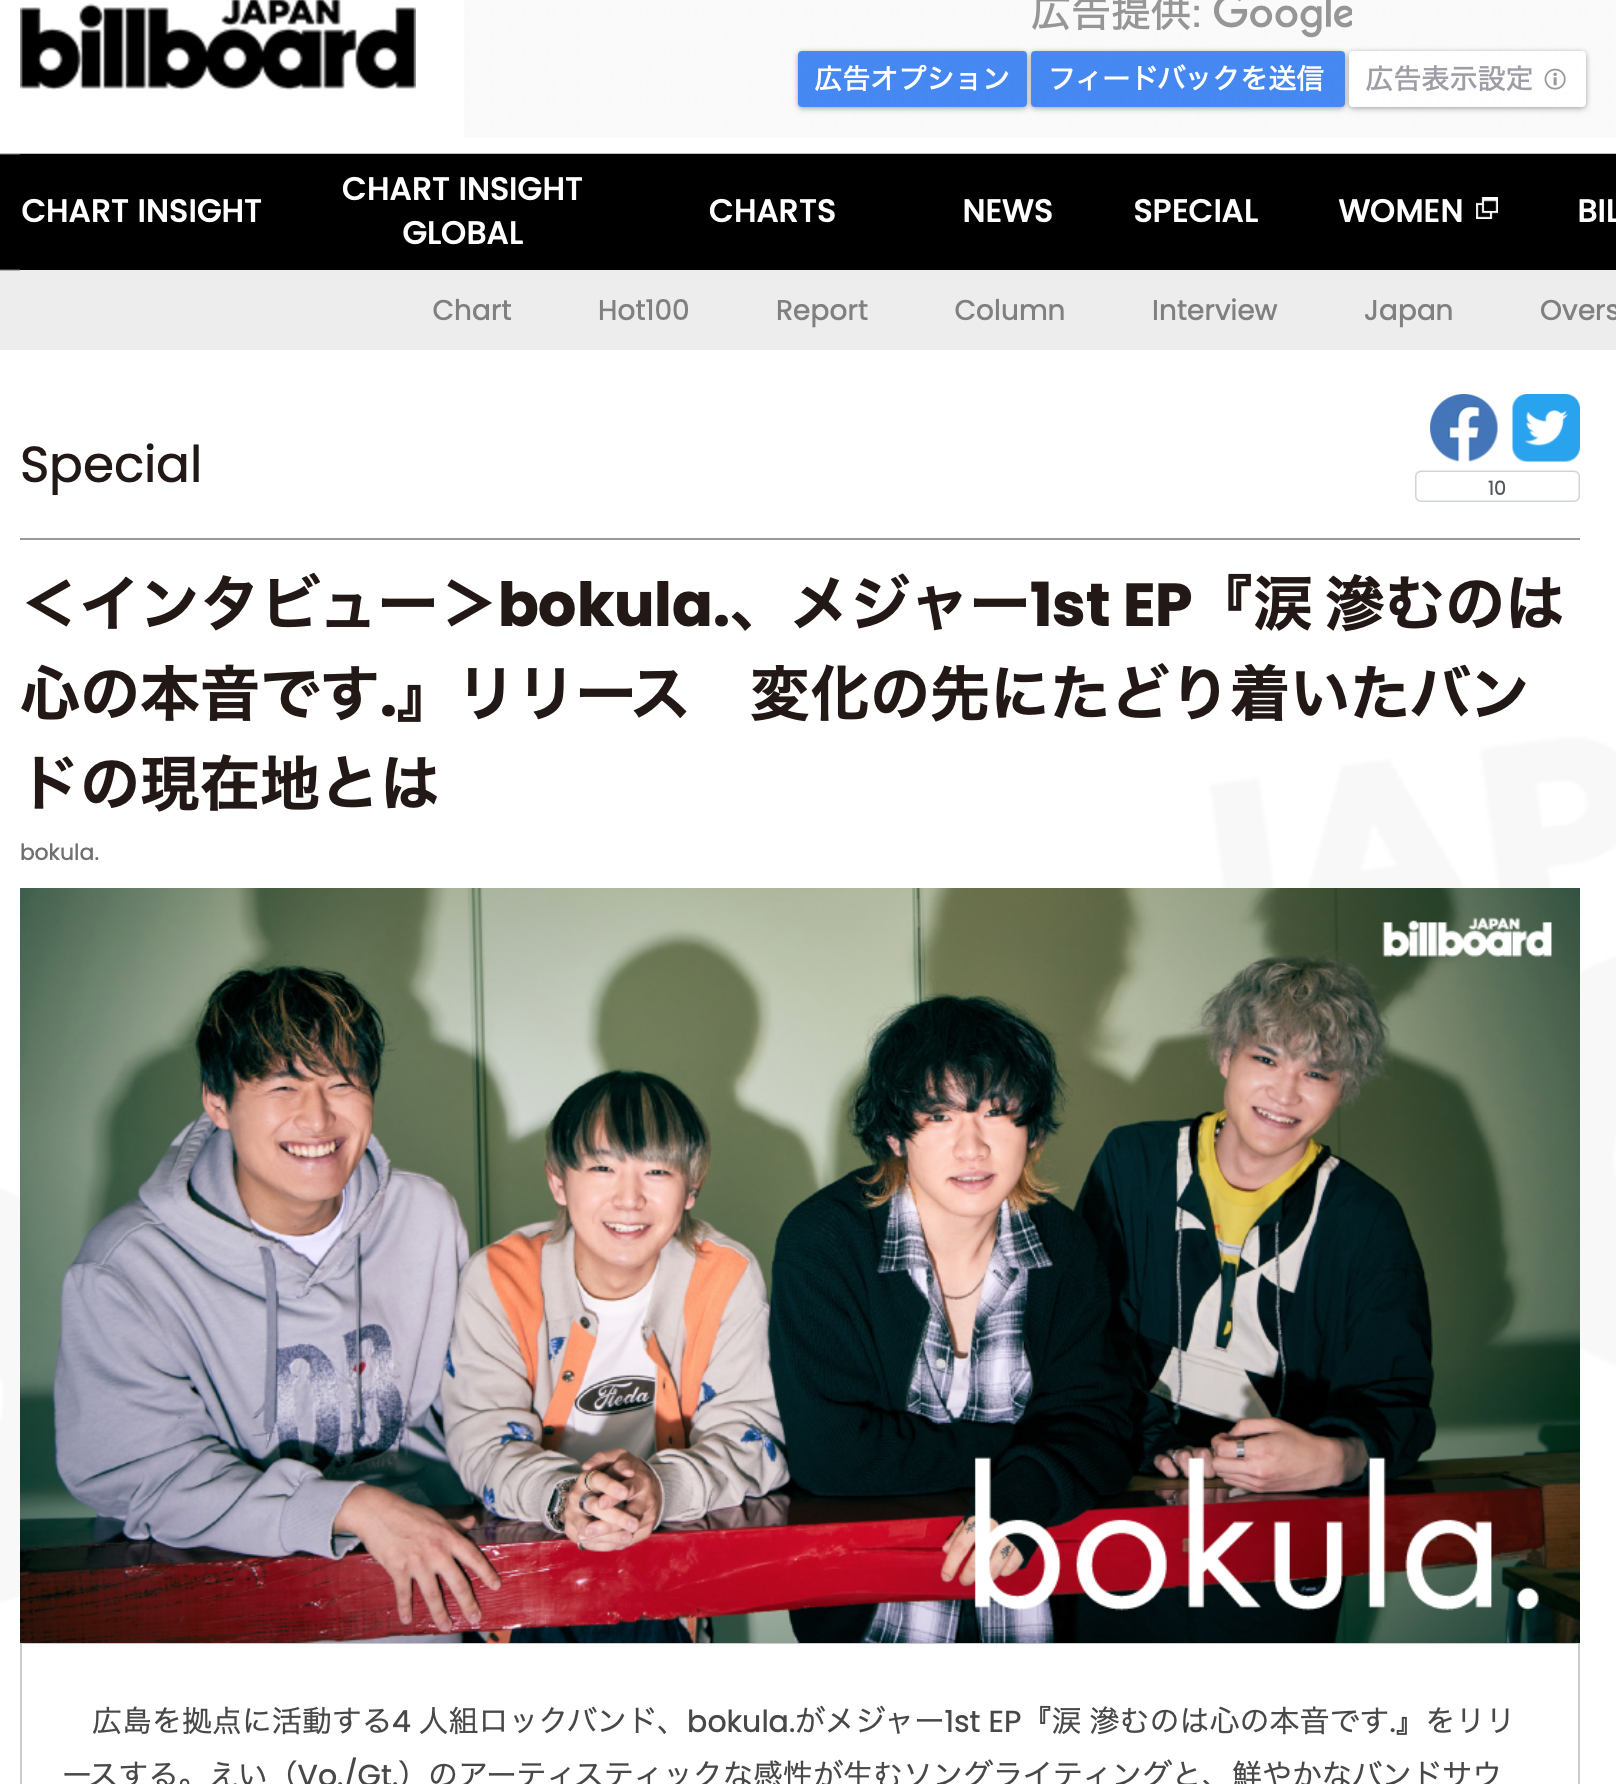 石原麻里絵がビルボードジャパンのインタビューでbokula.を撮影しました